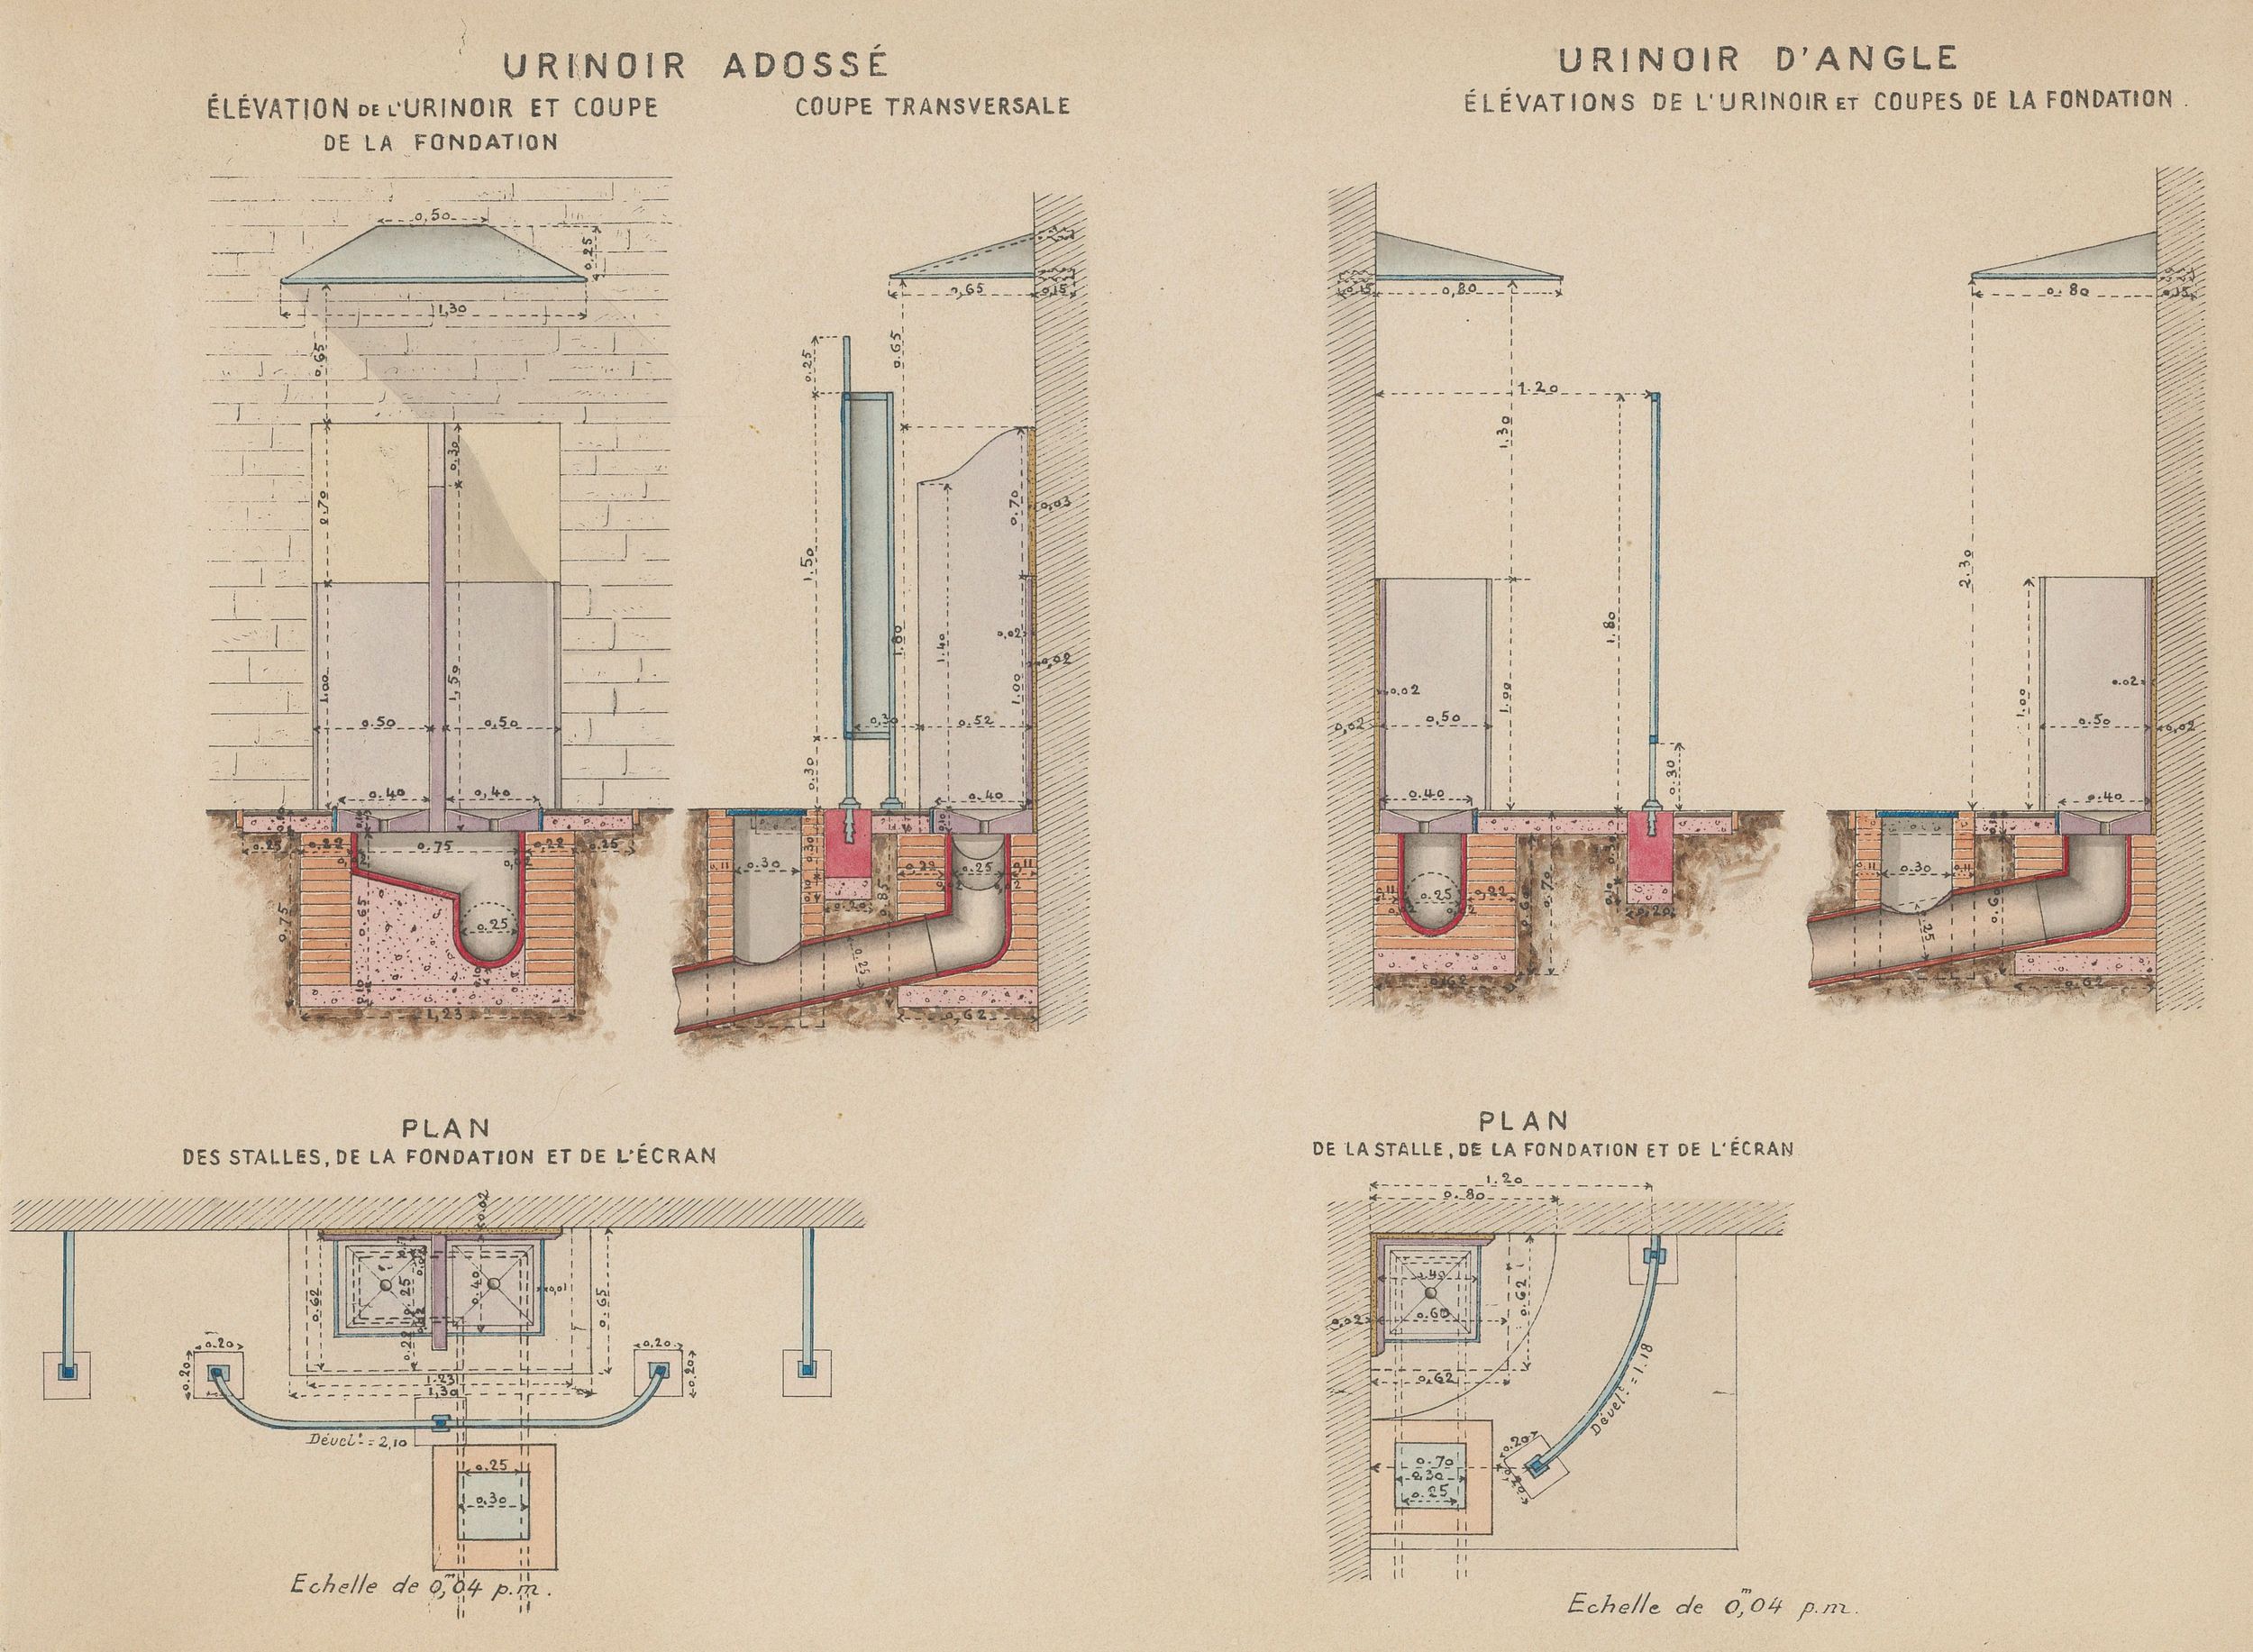  Urinoir adossé à deux stalles et urinoir d'angle (plan) : dessins manuscrits couleur sur papier cartonné par le Service municipal de la voirie (1914-1915, 3SAT/24/6)